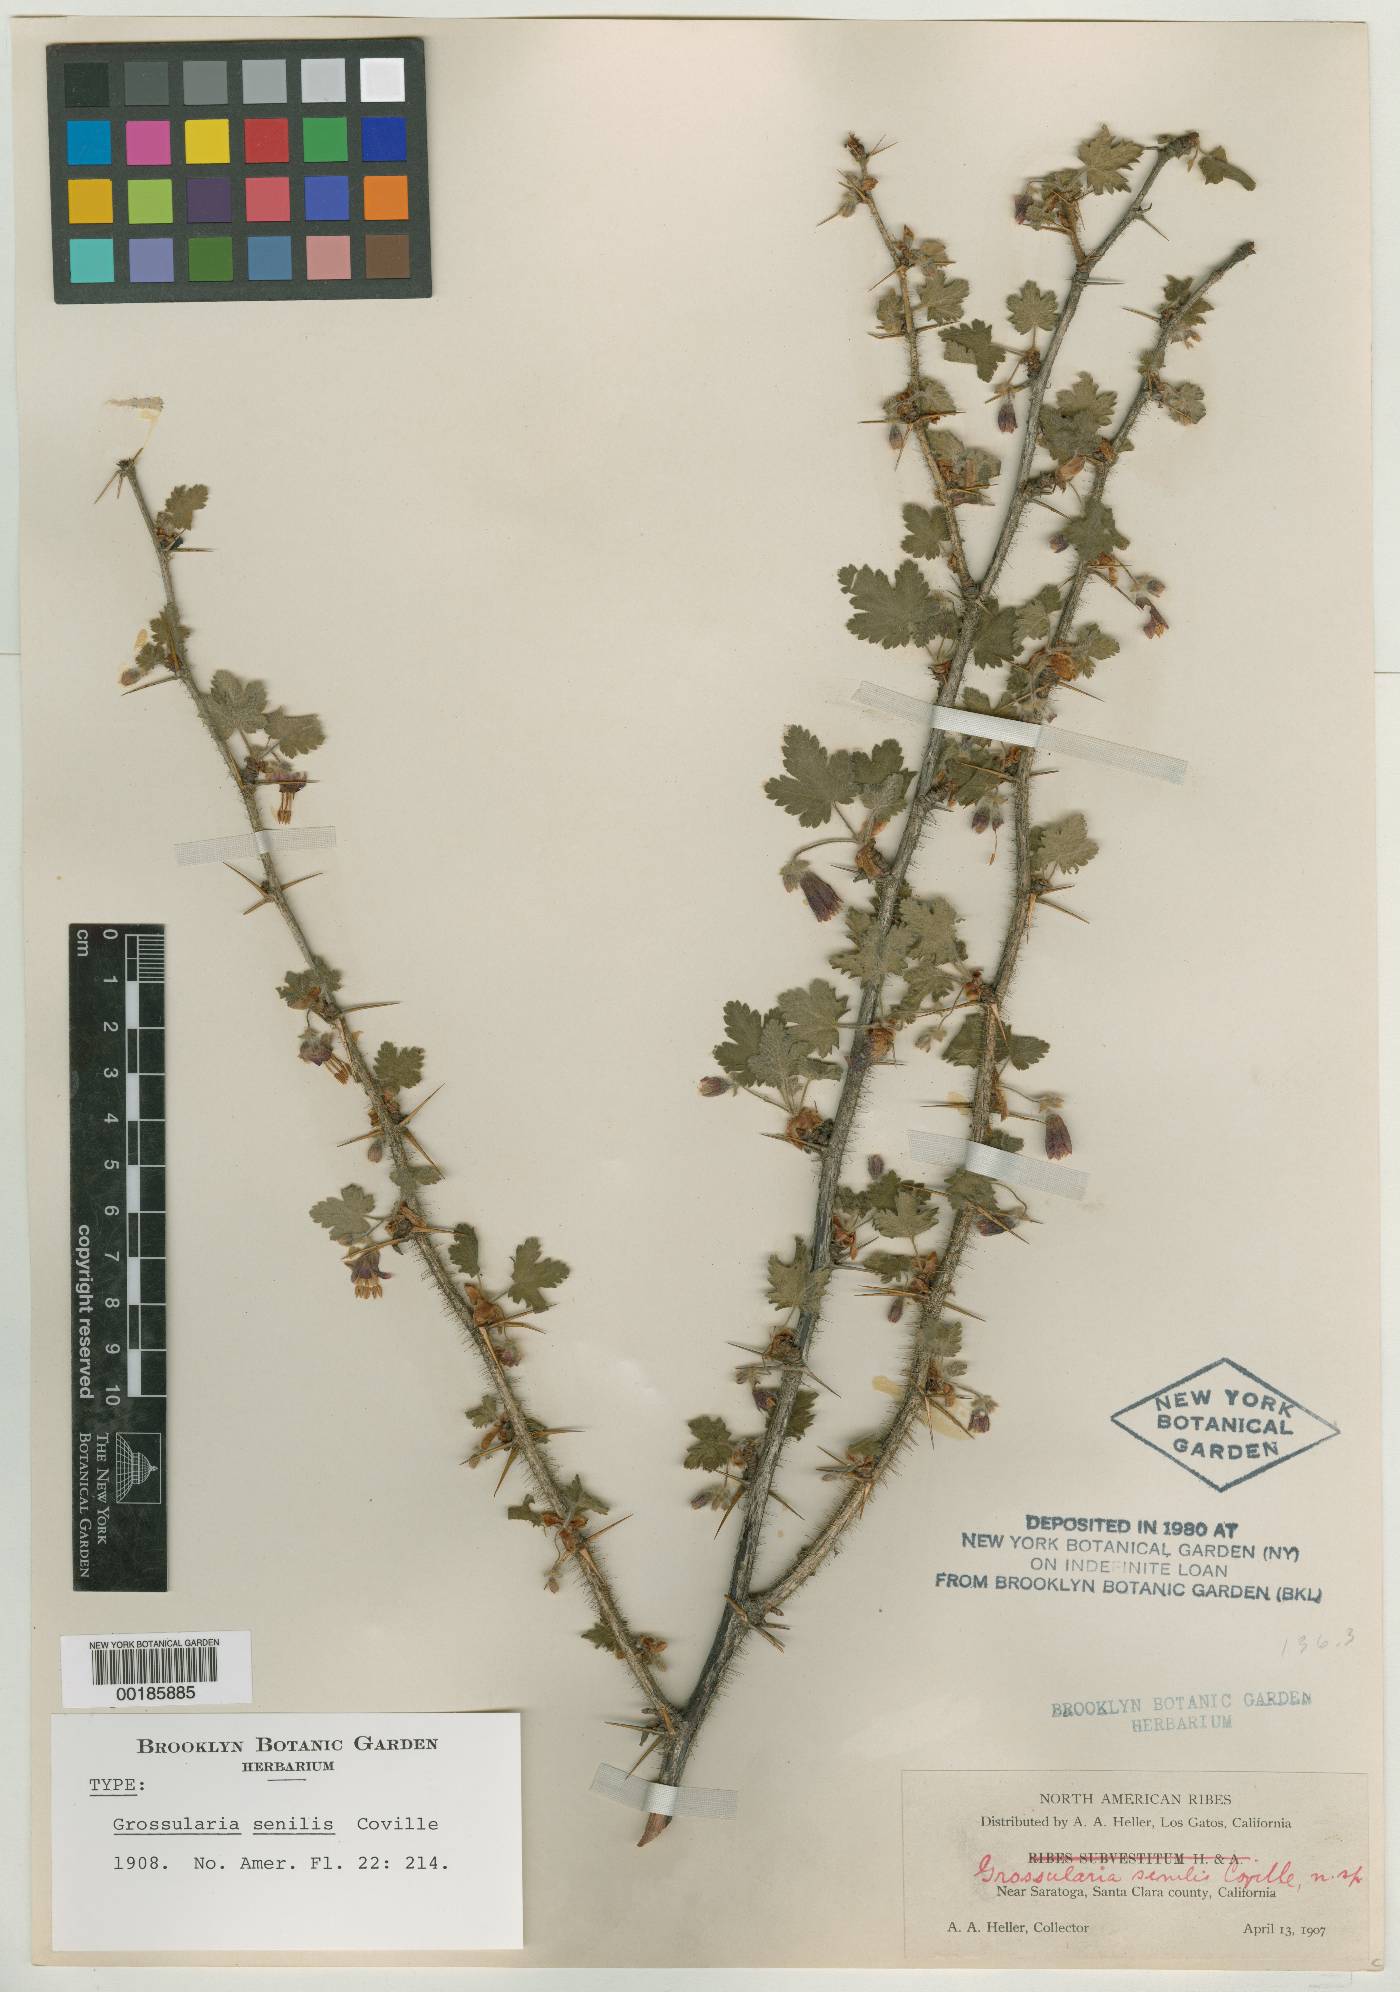 Grossularia image